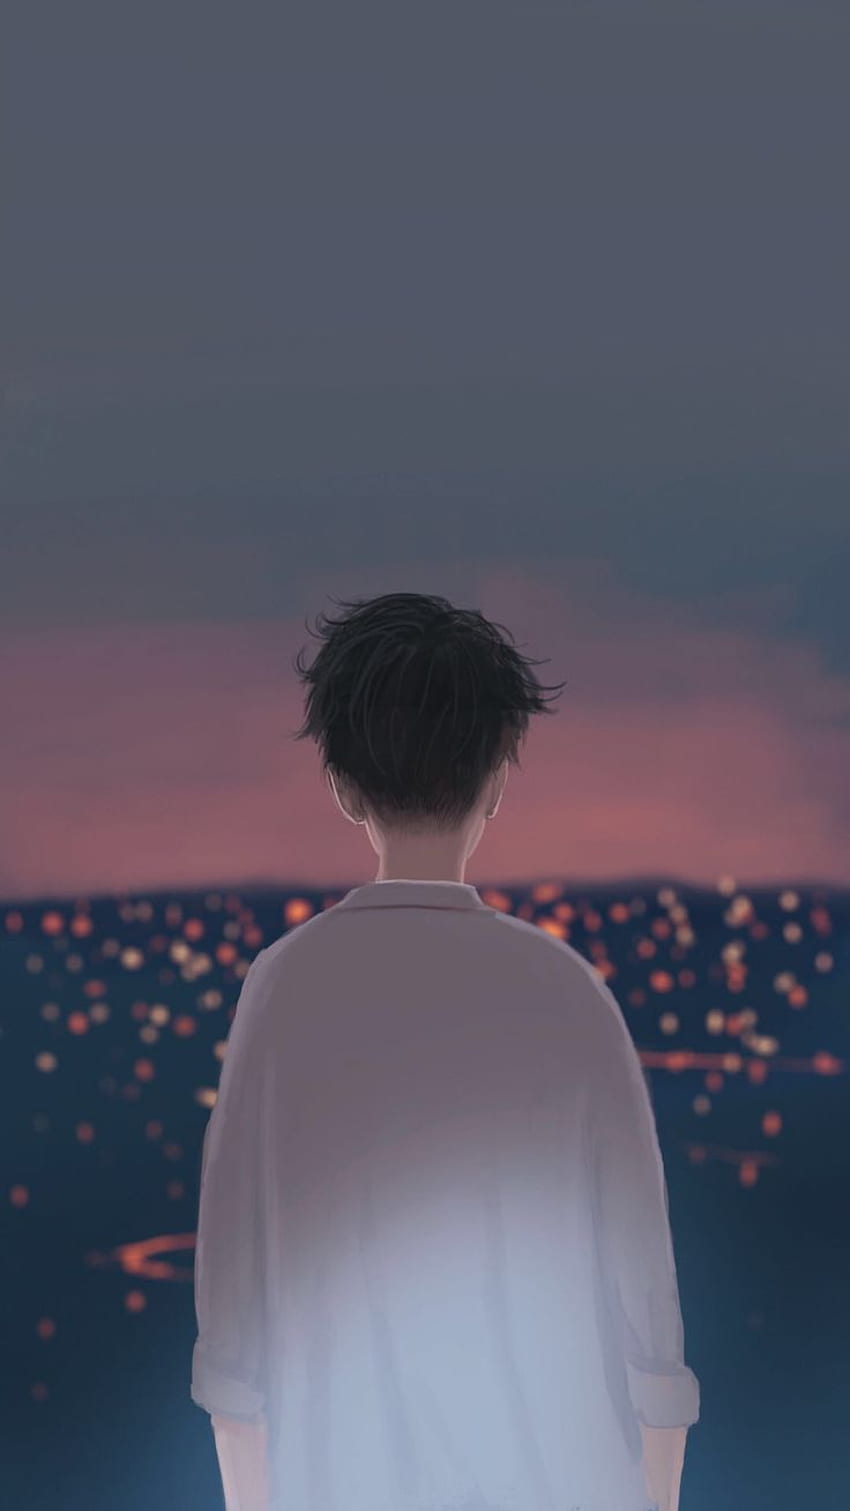 Sad Anime Boy Sitting Alone Evening: Hình minh họa có sẵn 2329935373 |  Shutterstock